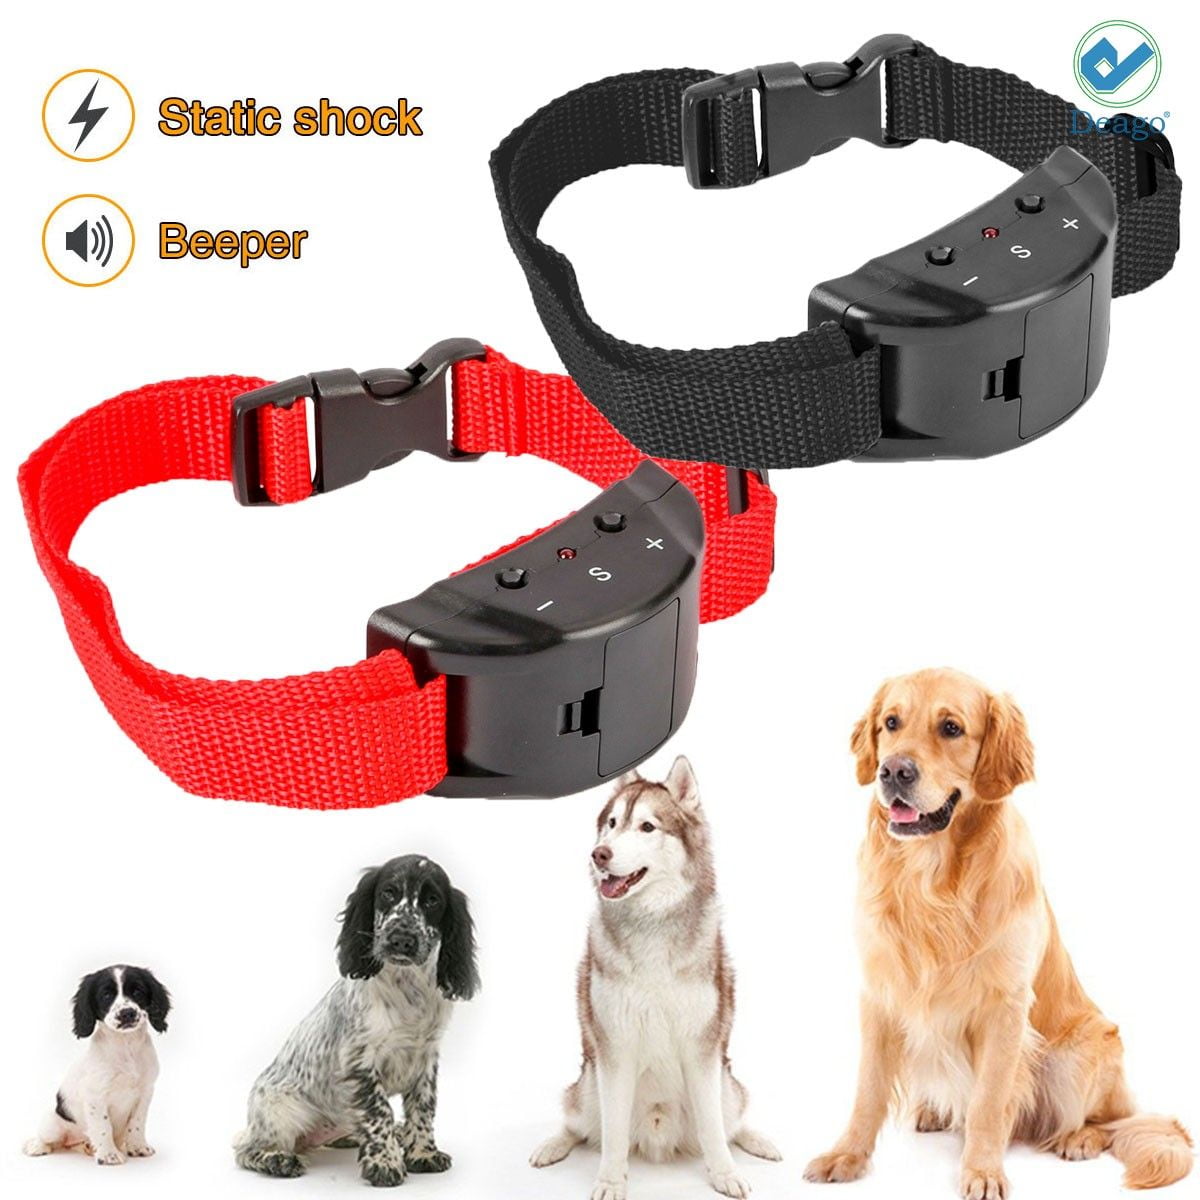 Medium Dogs Premium Small Dog Bark Collar,Small Dog Bark Collar,Humane Anti Bark Collar with Beep,Vibration,Safe No Shock Collar,Dog Training Collar for Small